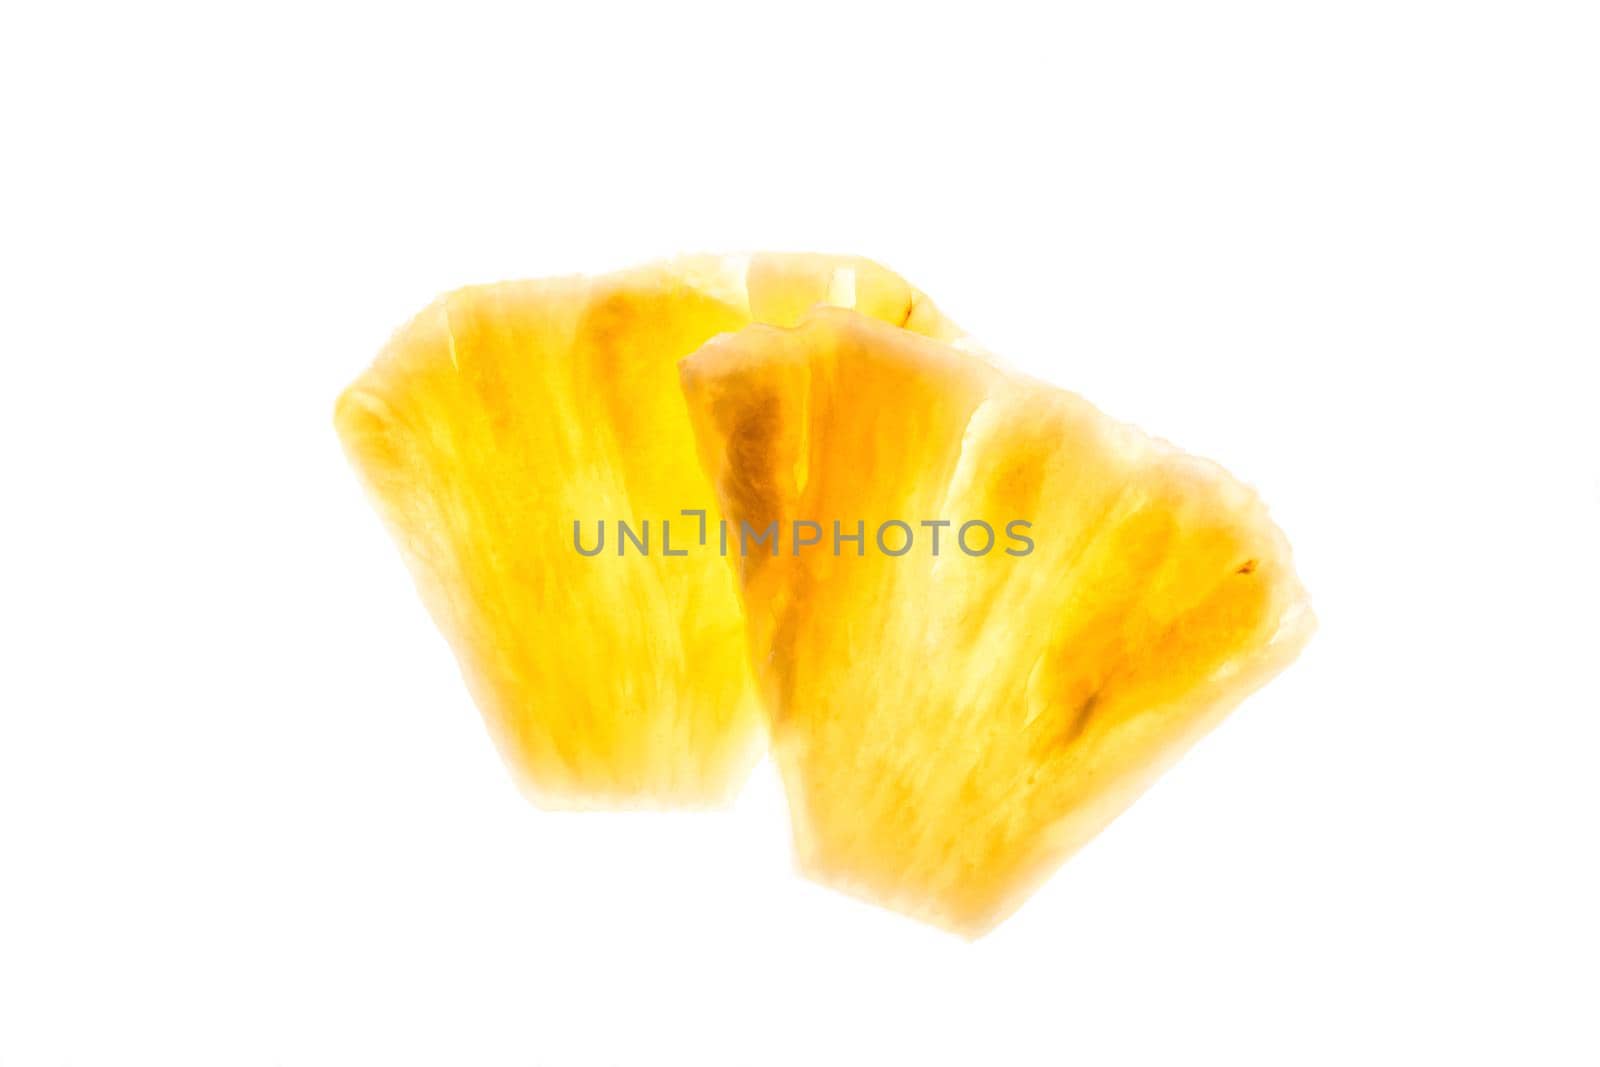 Pineapple chunks isolated on white background by nazarovsergey